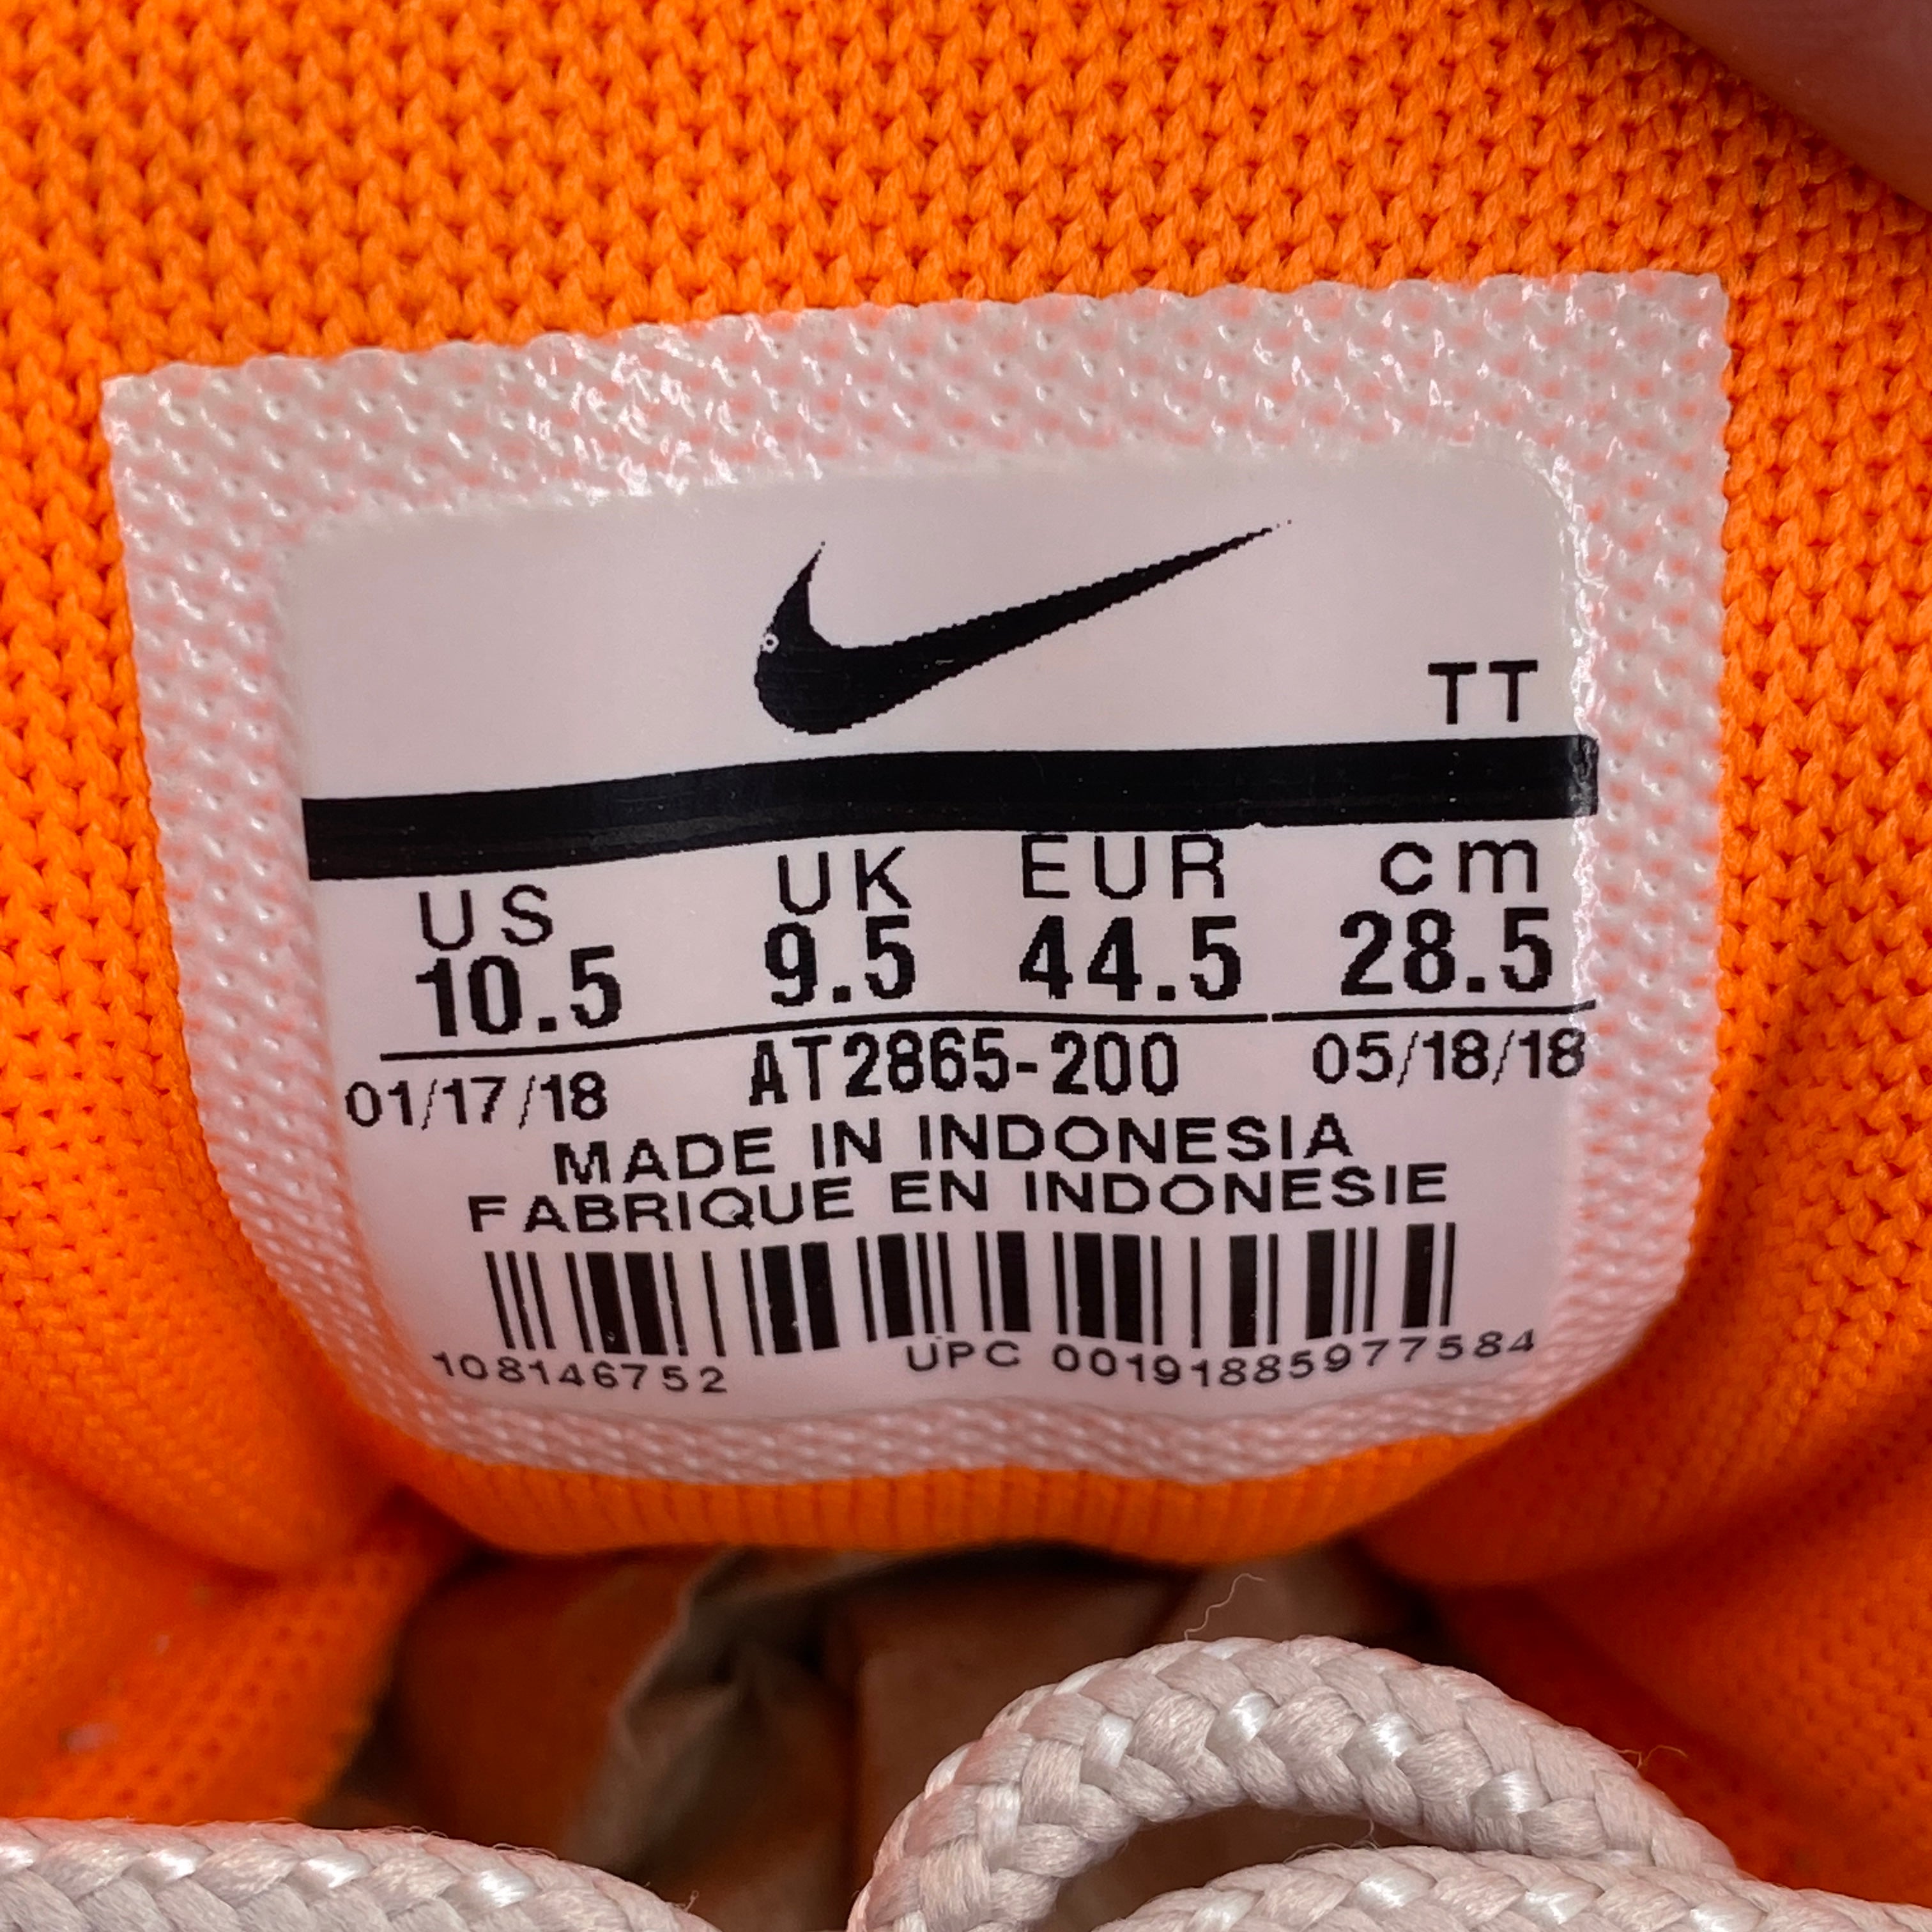 Nike nike flyknit racer pink green orange ice cream "Olive Orange" 2018 Used Size 10.5